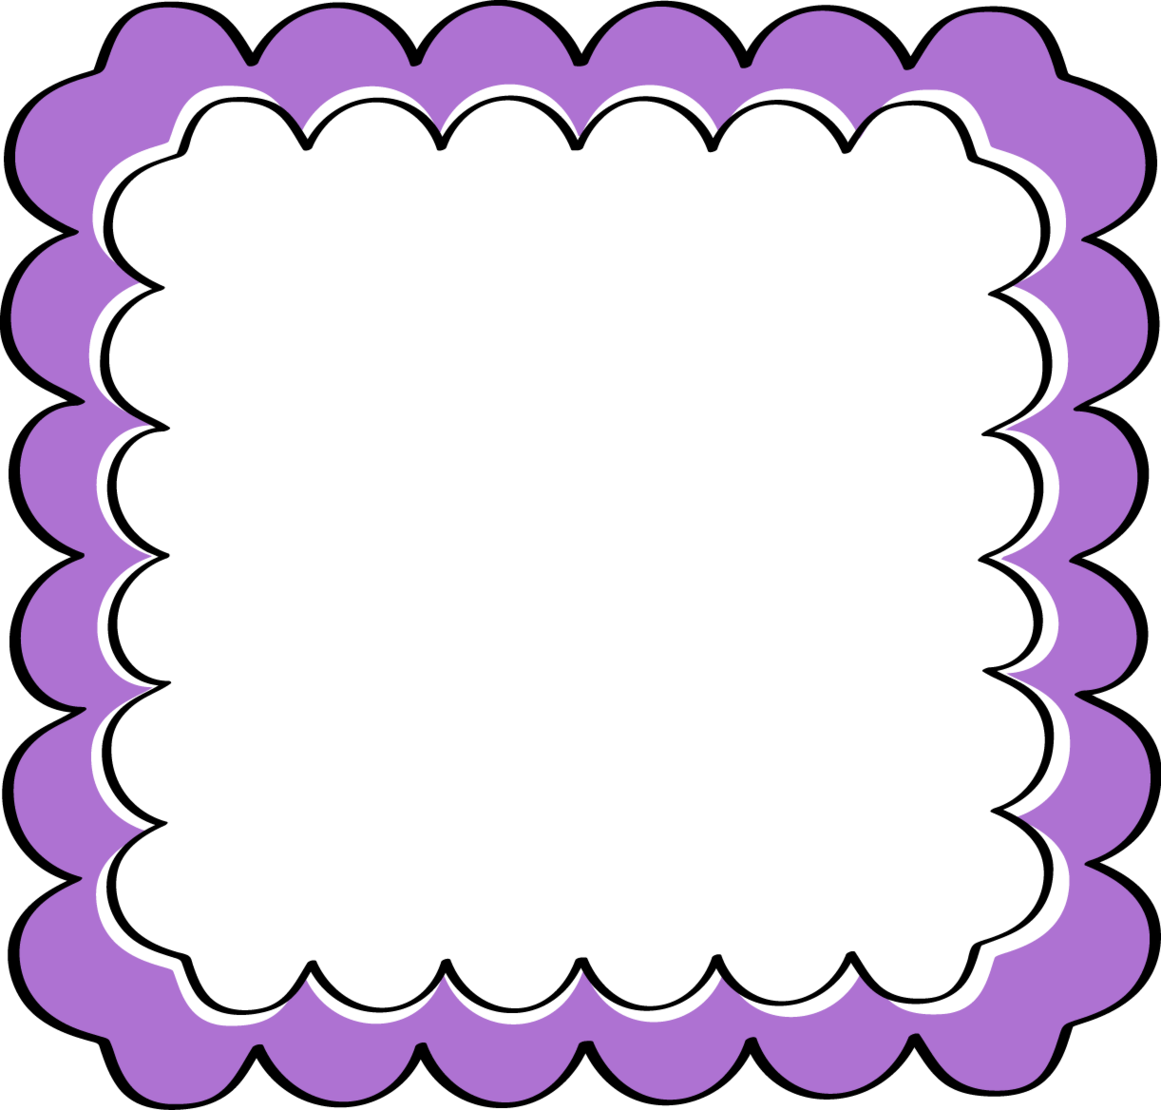 Purple Chevron Border Clipart - Free to use Clip Art Resource